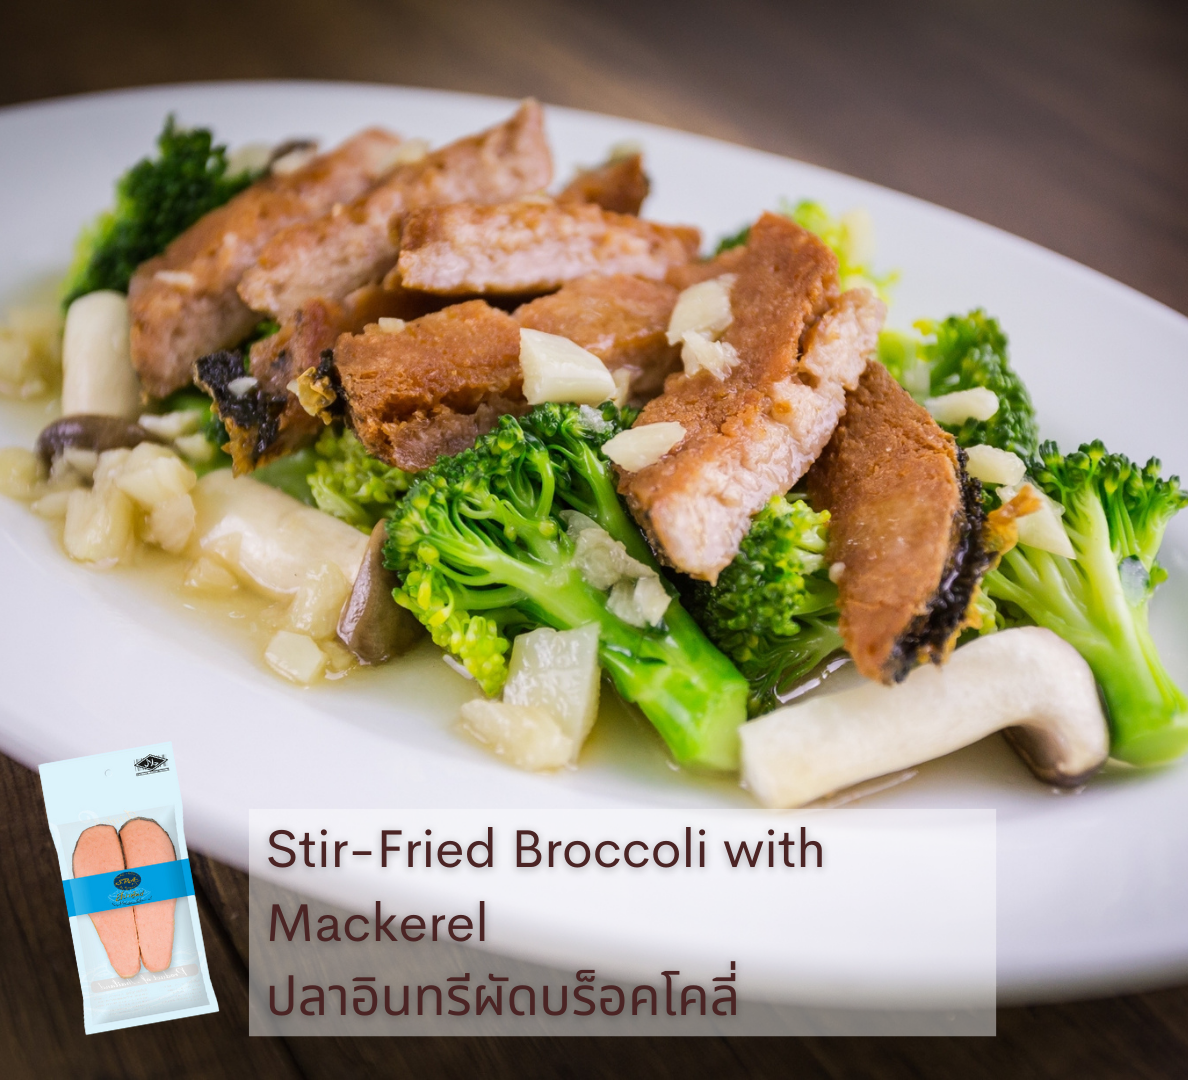 เมนูอาหารเจ-มังสวิรัติ spa foods stir fried broccoli with mackerel ปลาอินทรีผัดบร็อคโคลี่-vegan